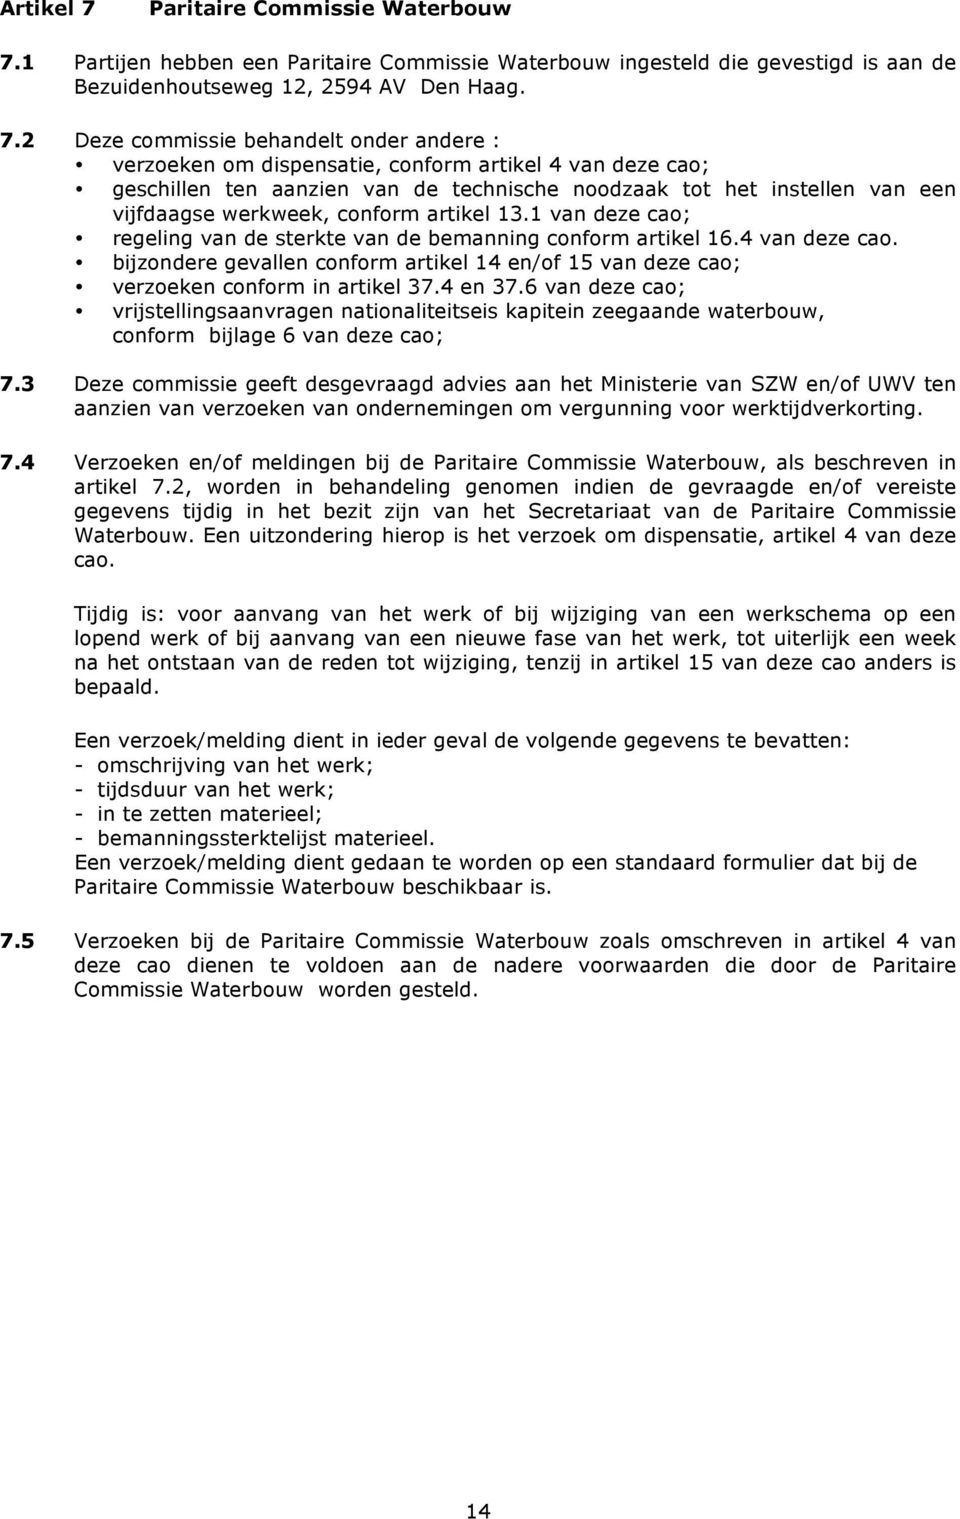 1 Partijen hebben een Paritaire Commissie Waterbouw ingesteld die gevestigd is aan de Bezuidenhoutseweg 12, 2594 AV Den Haag. 7.